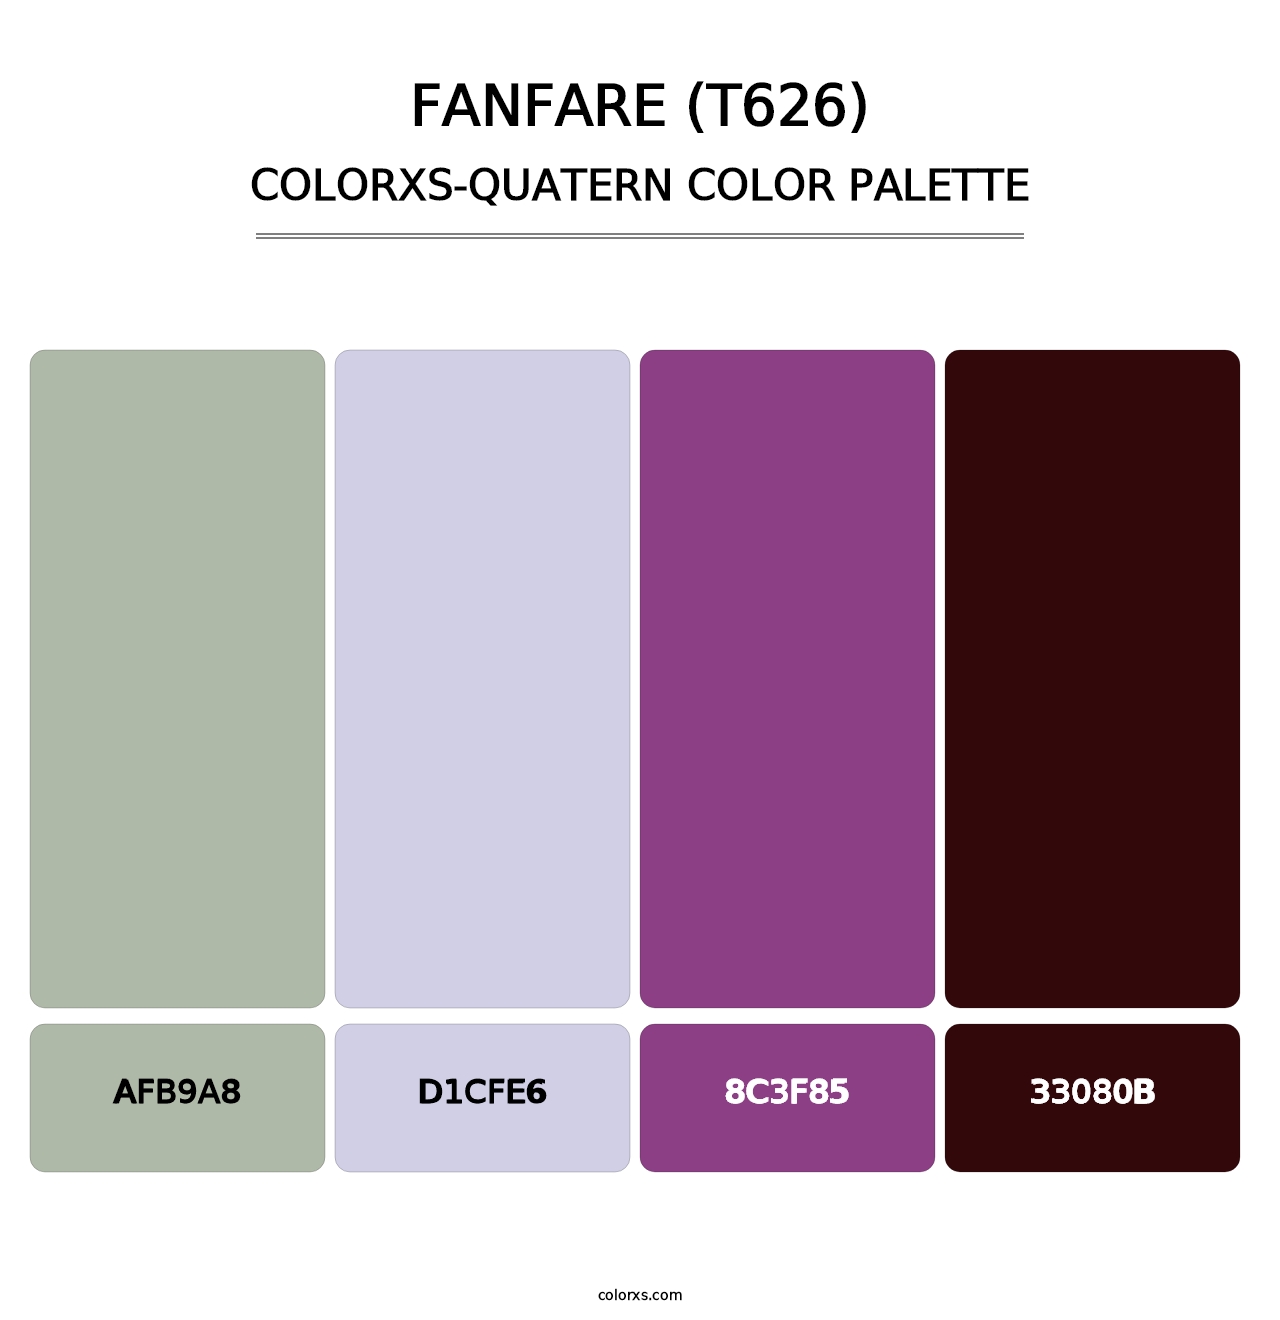 Fanfare (T626) - Colorxs Quatern Palette